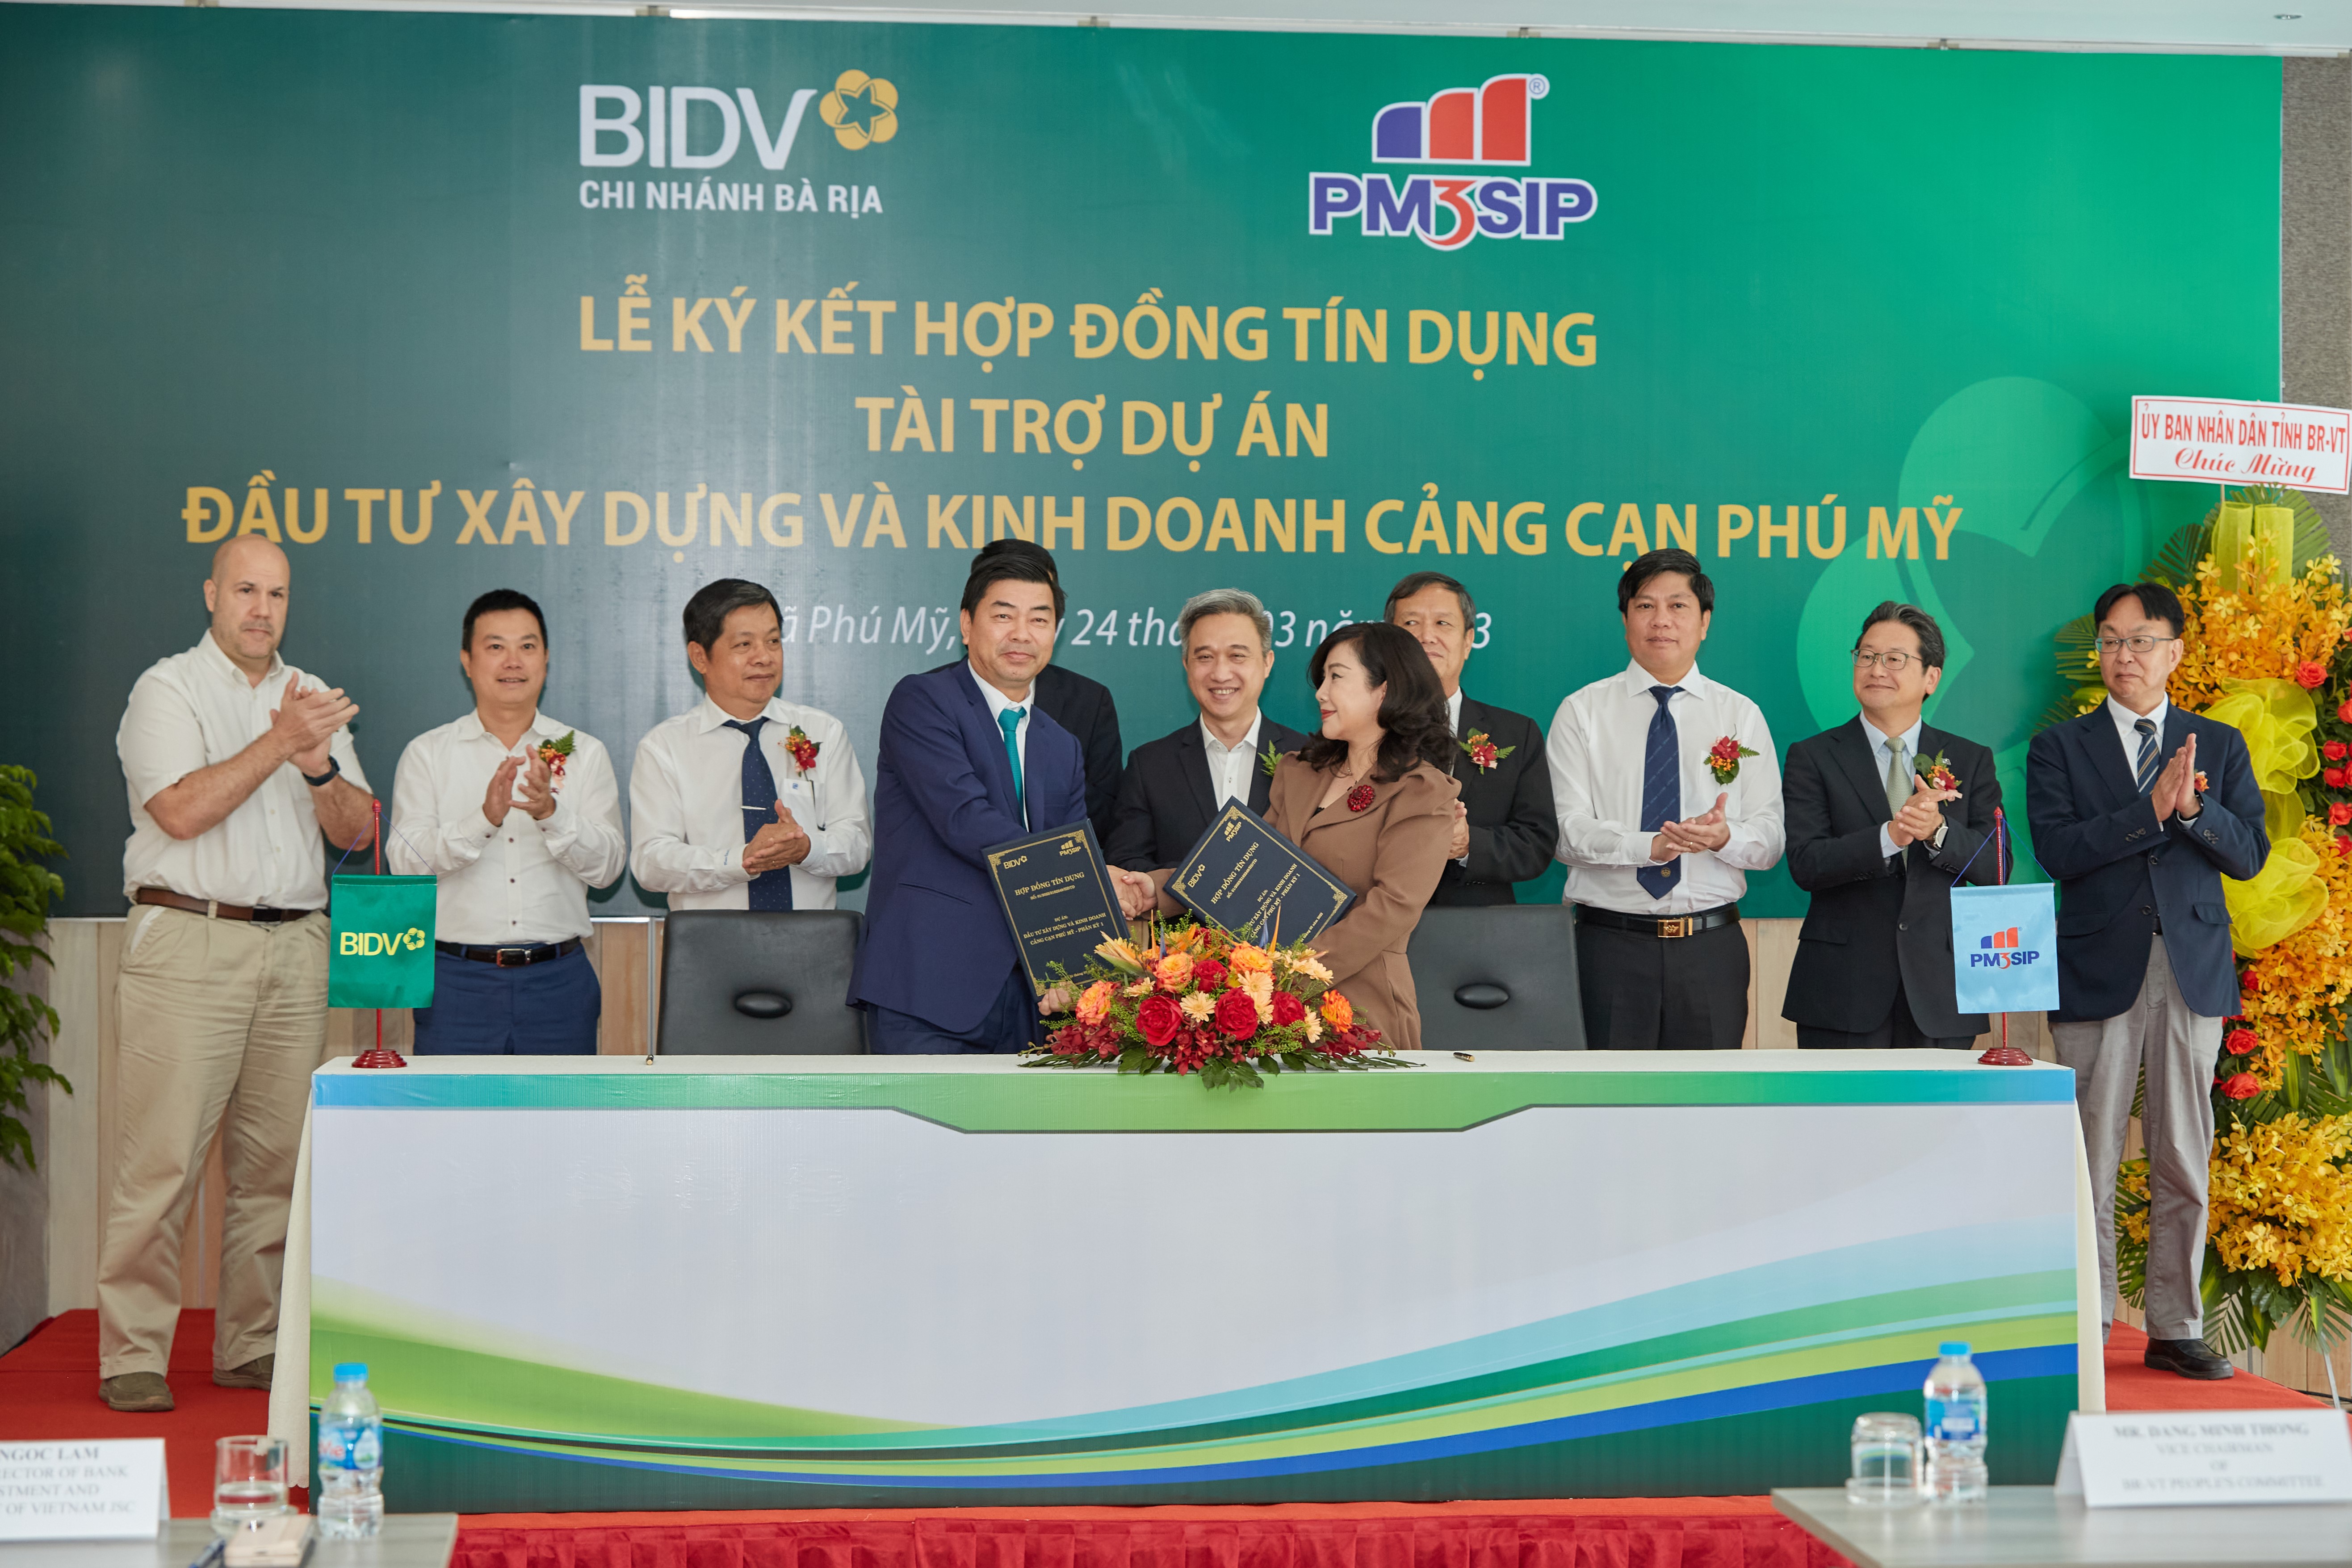 Signing Ceremony: BIDV × Phu My 3